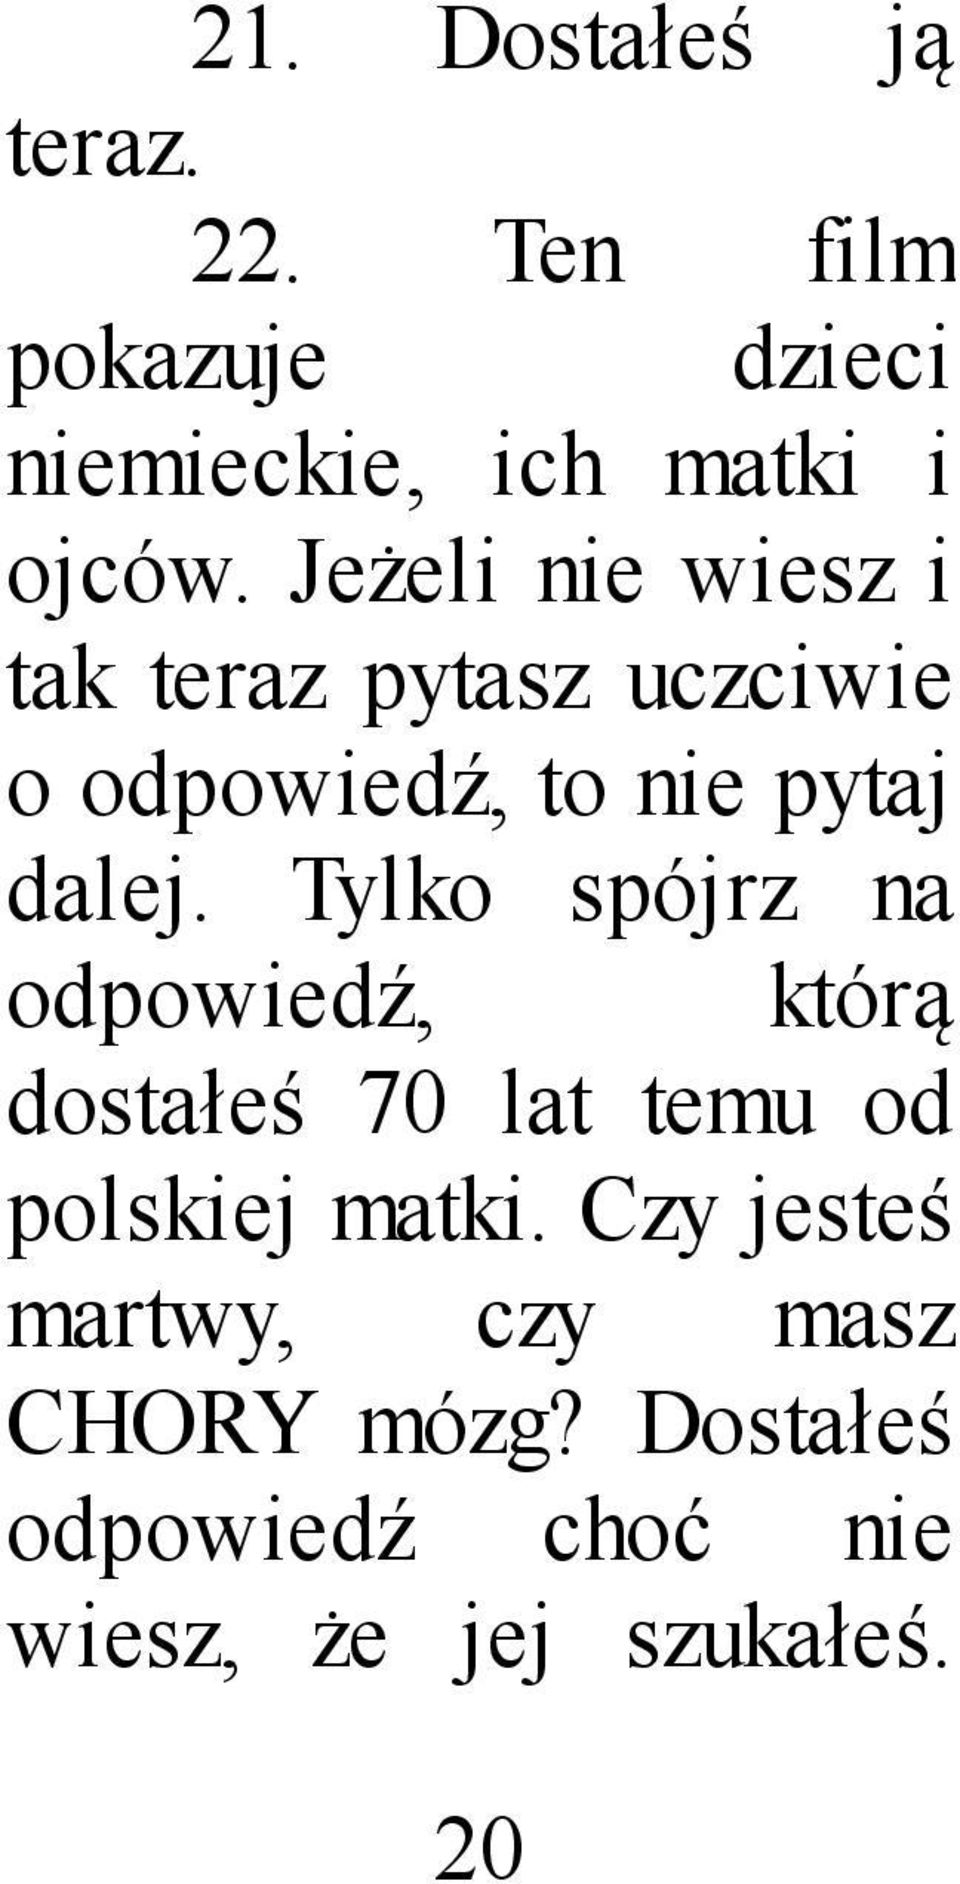 Tylko spójrz na odpowiedź, którą dostałeś 70 lat temu od polskiej matki.